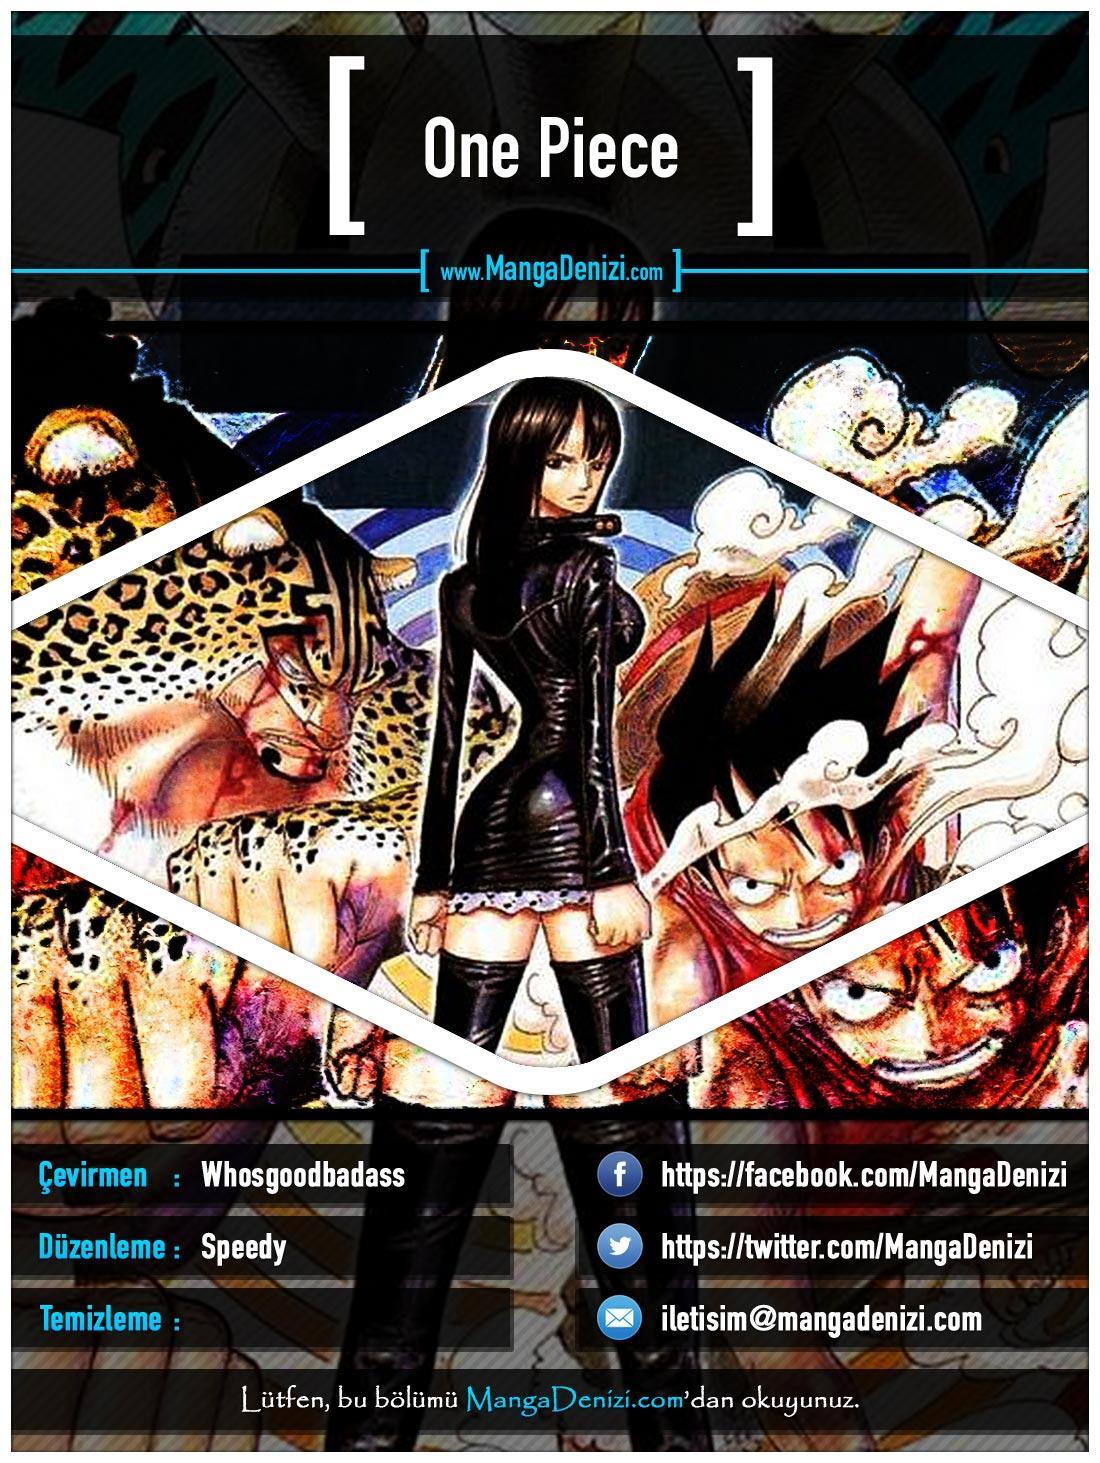 One Piece [Renkli] mangasının 0395 bölümünün 1. sayfasını okuyorsunuz.